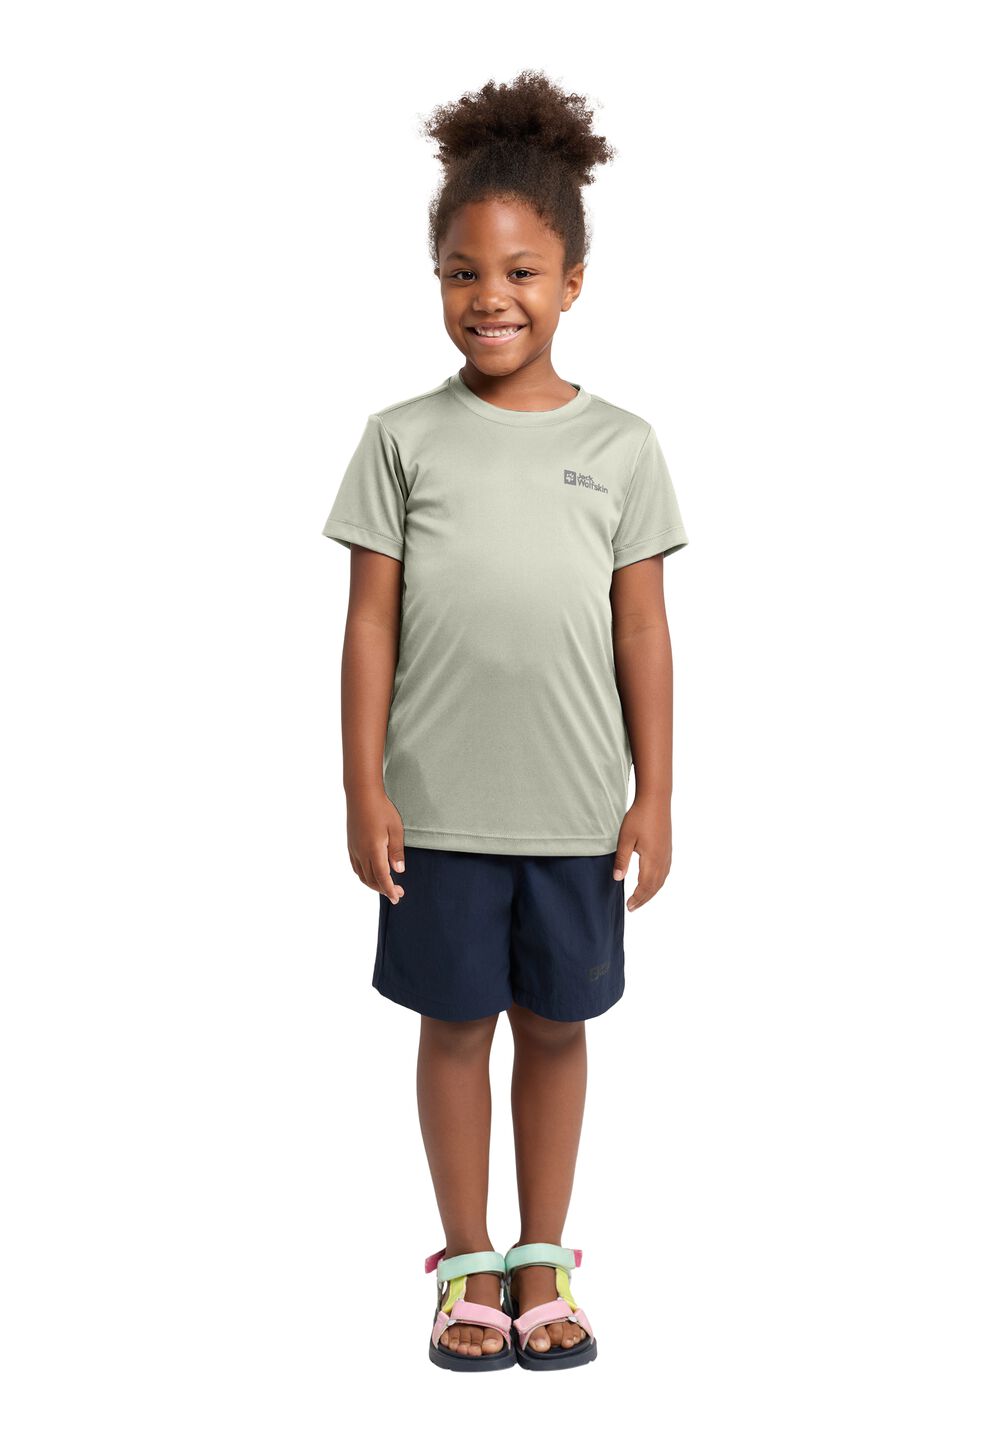 Jack Wolfskin Active Solid T-Shirt Kids Functioneel shirt Kinderen 140 mint leaf mint leaf